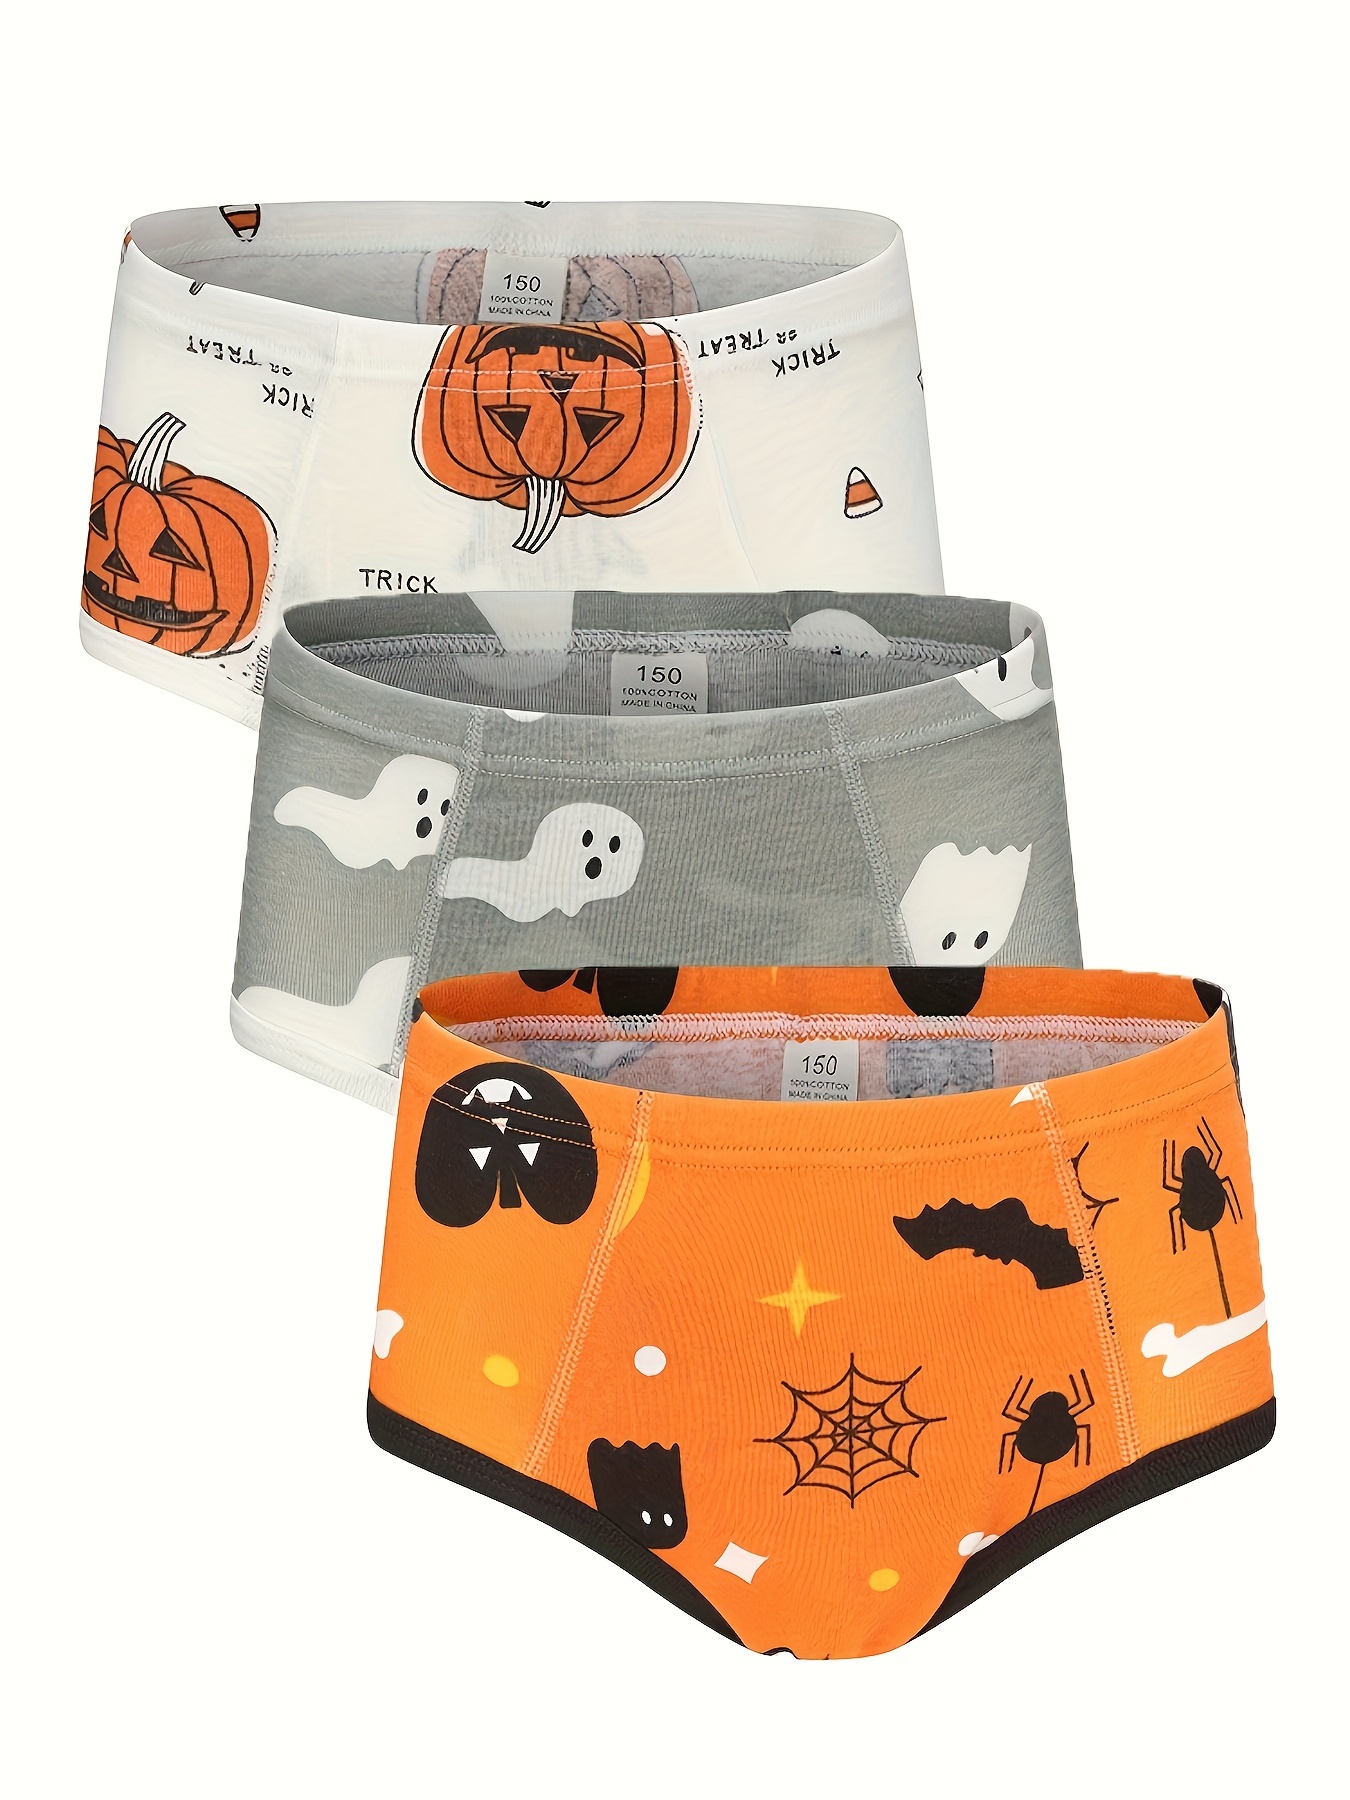 Jack-o'lantern Men's Briefs Underwear, Halloween Pumpkin Undies